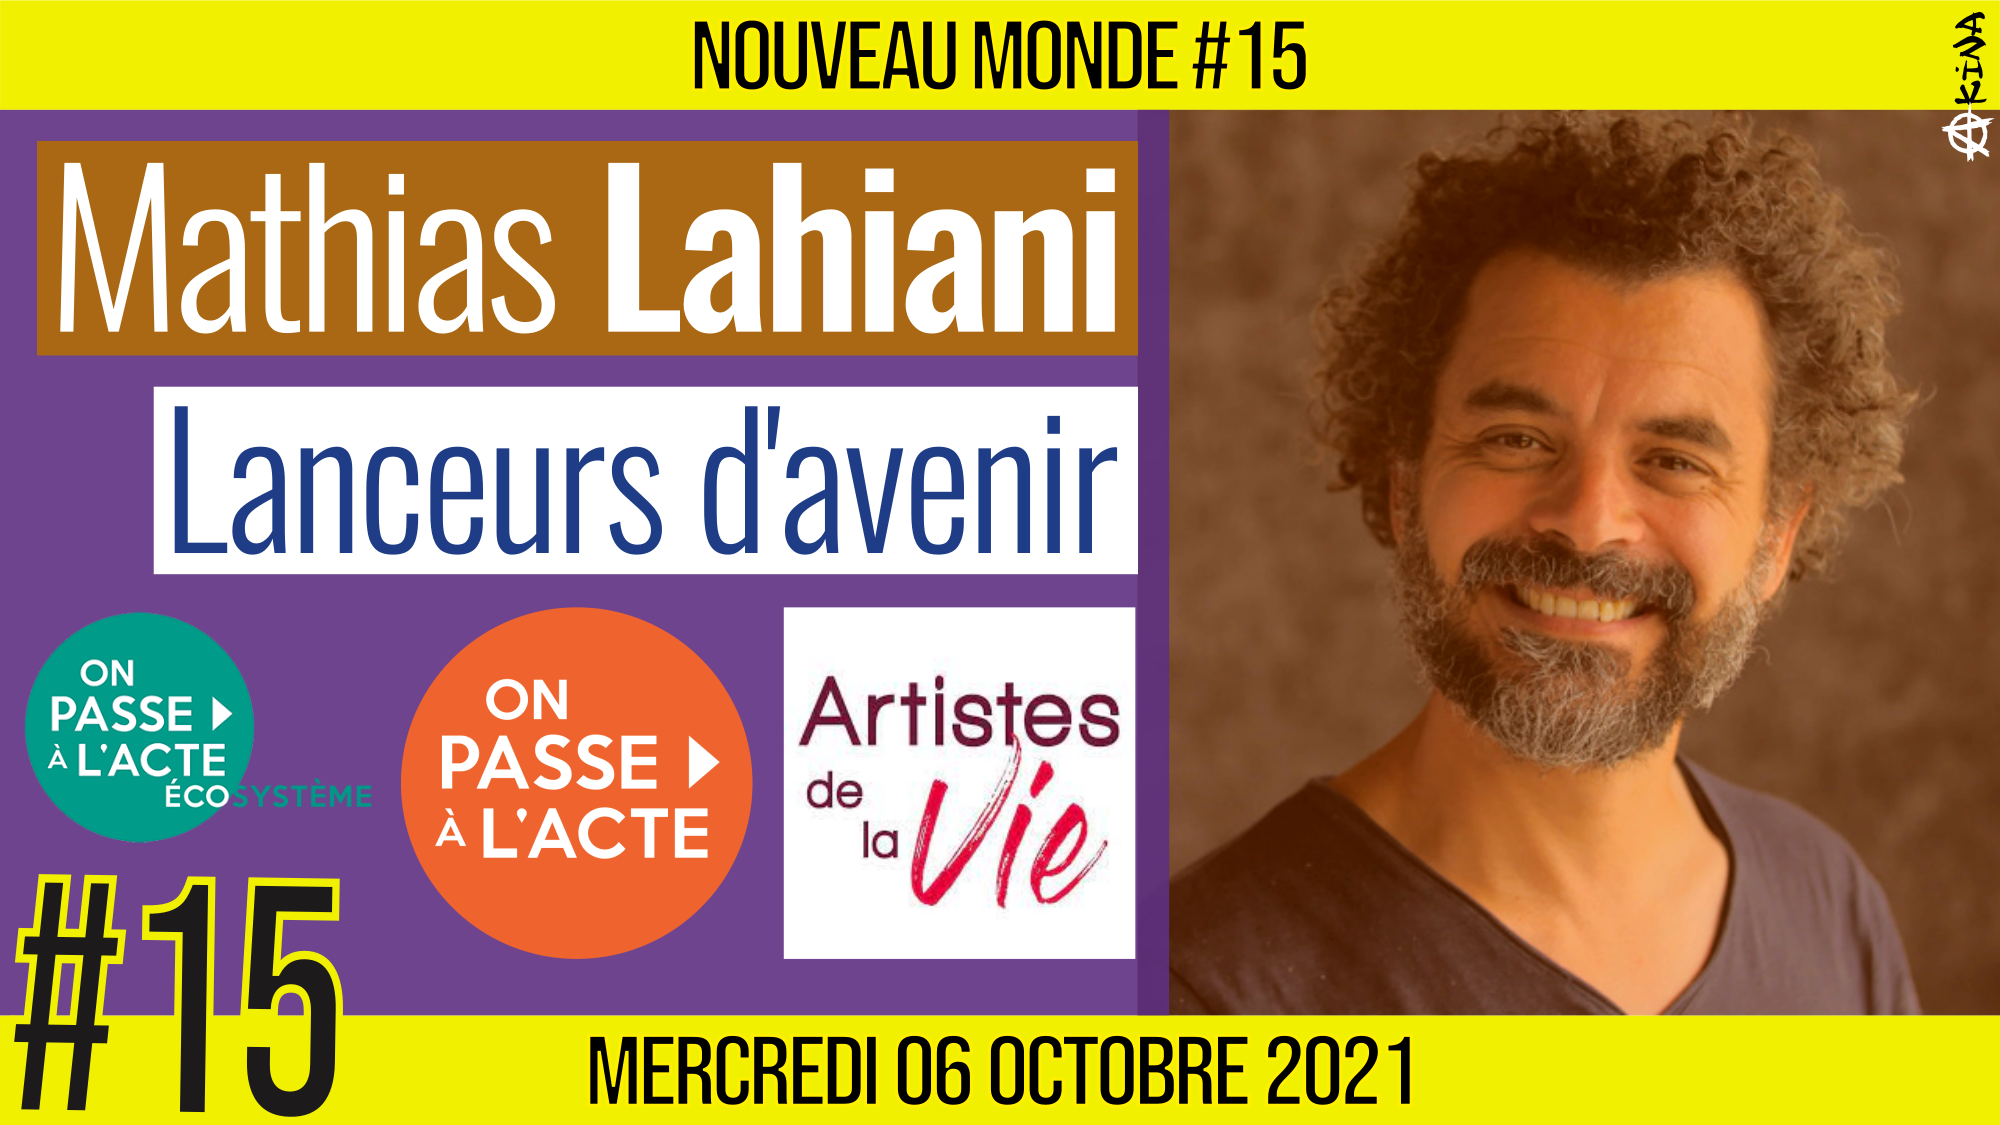 🌅 NOUVEAU MONDE #15 🔑 On Passe A l’Acte : Lanceurs d’avenir 🗣 Mathias LAHIANI 📆 27-09-2021